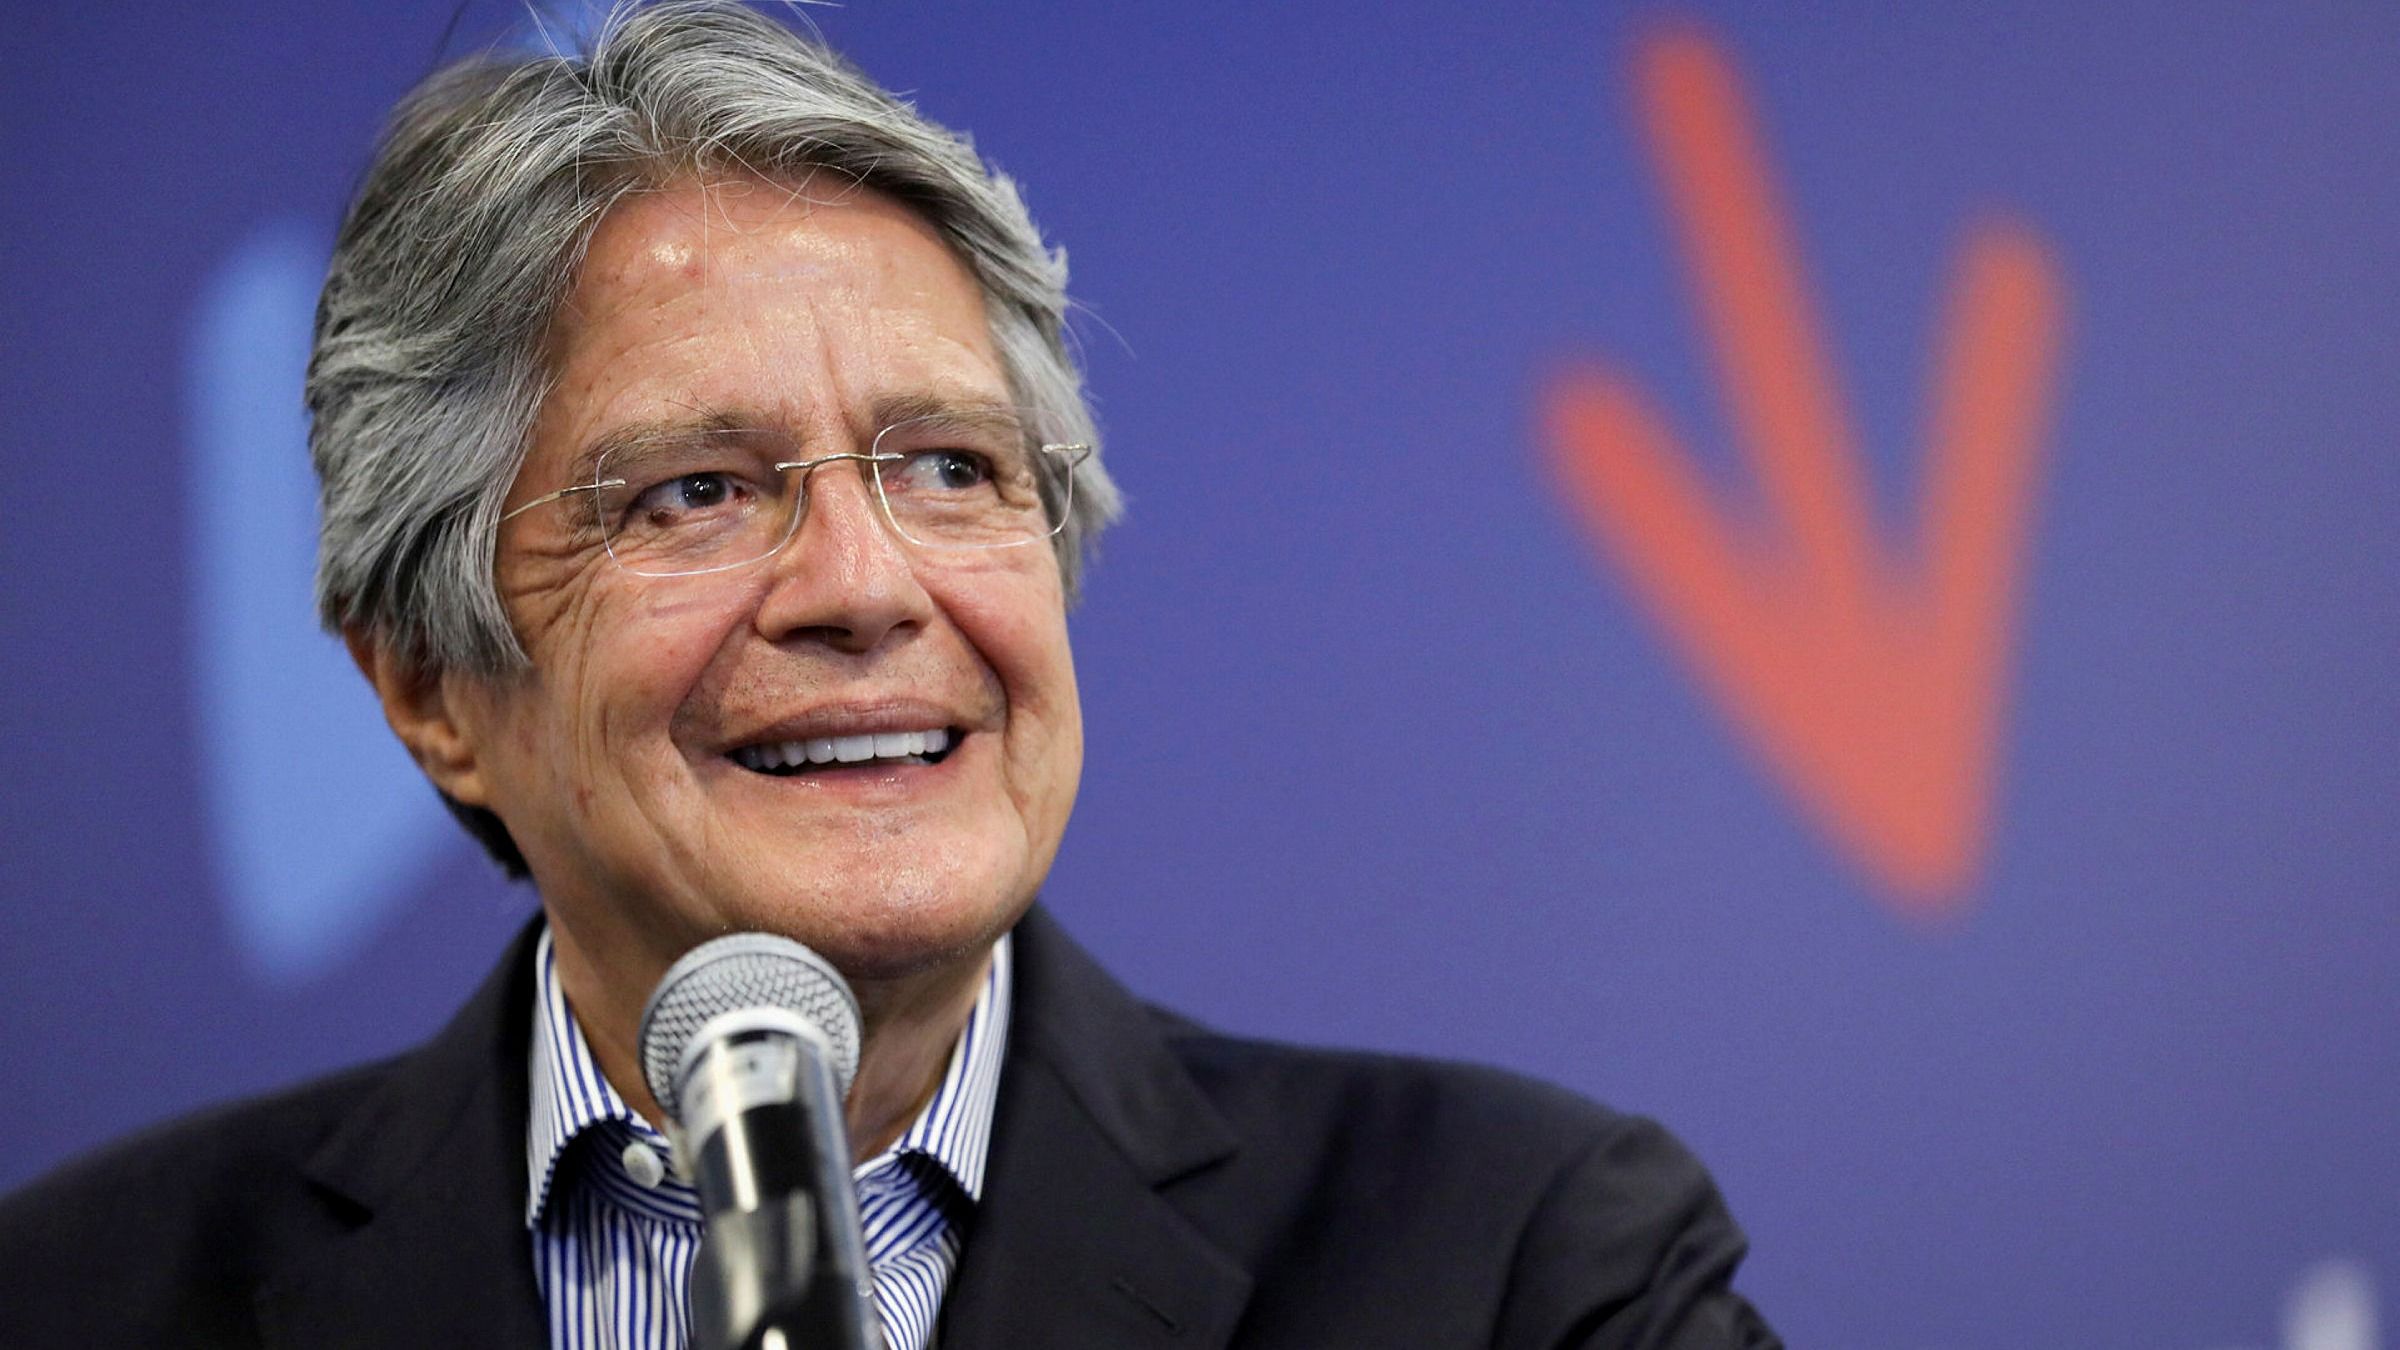 El Presidente De Ecuador decreta no tareas en días anteriores a revisión de portafolio